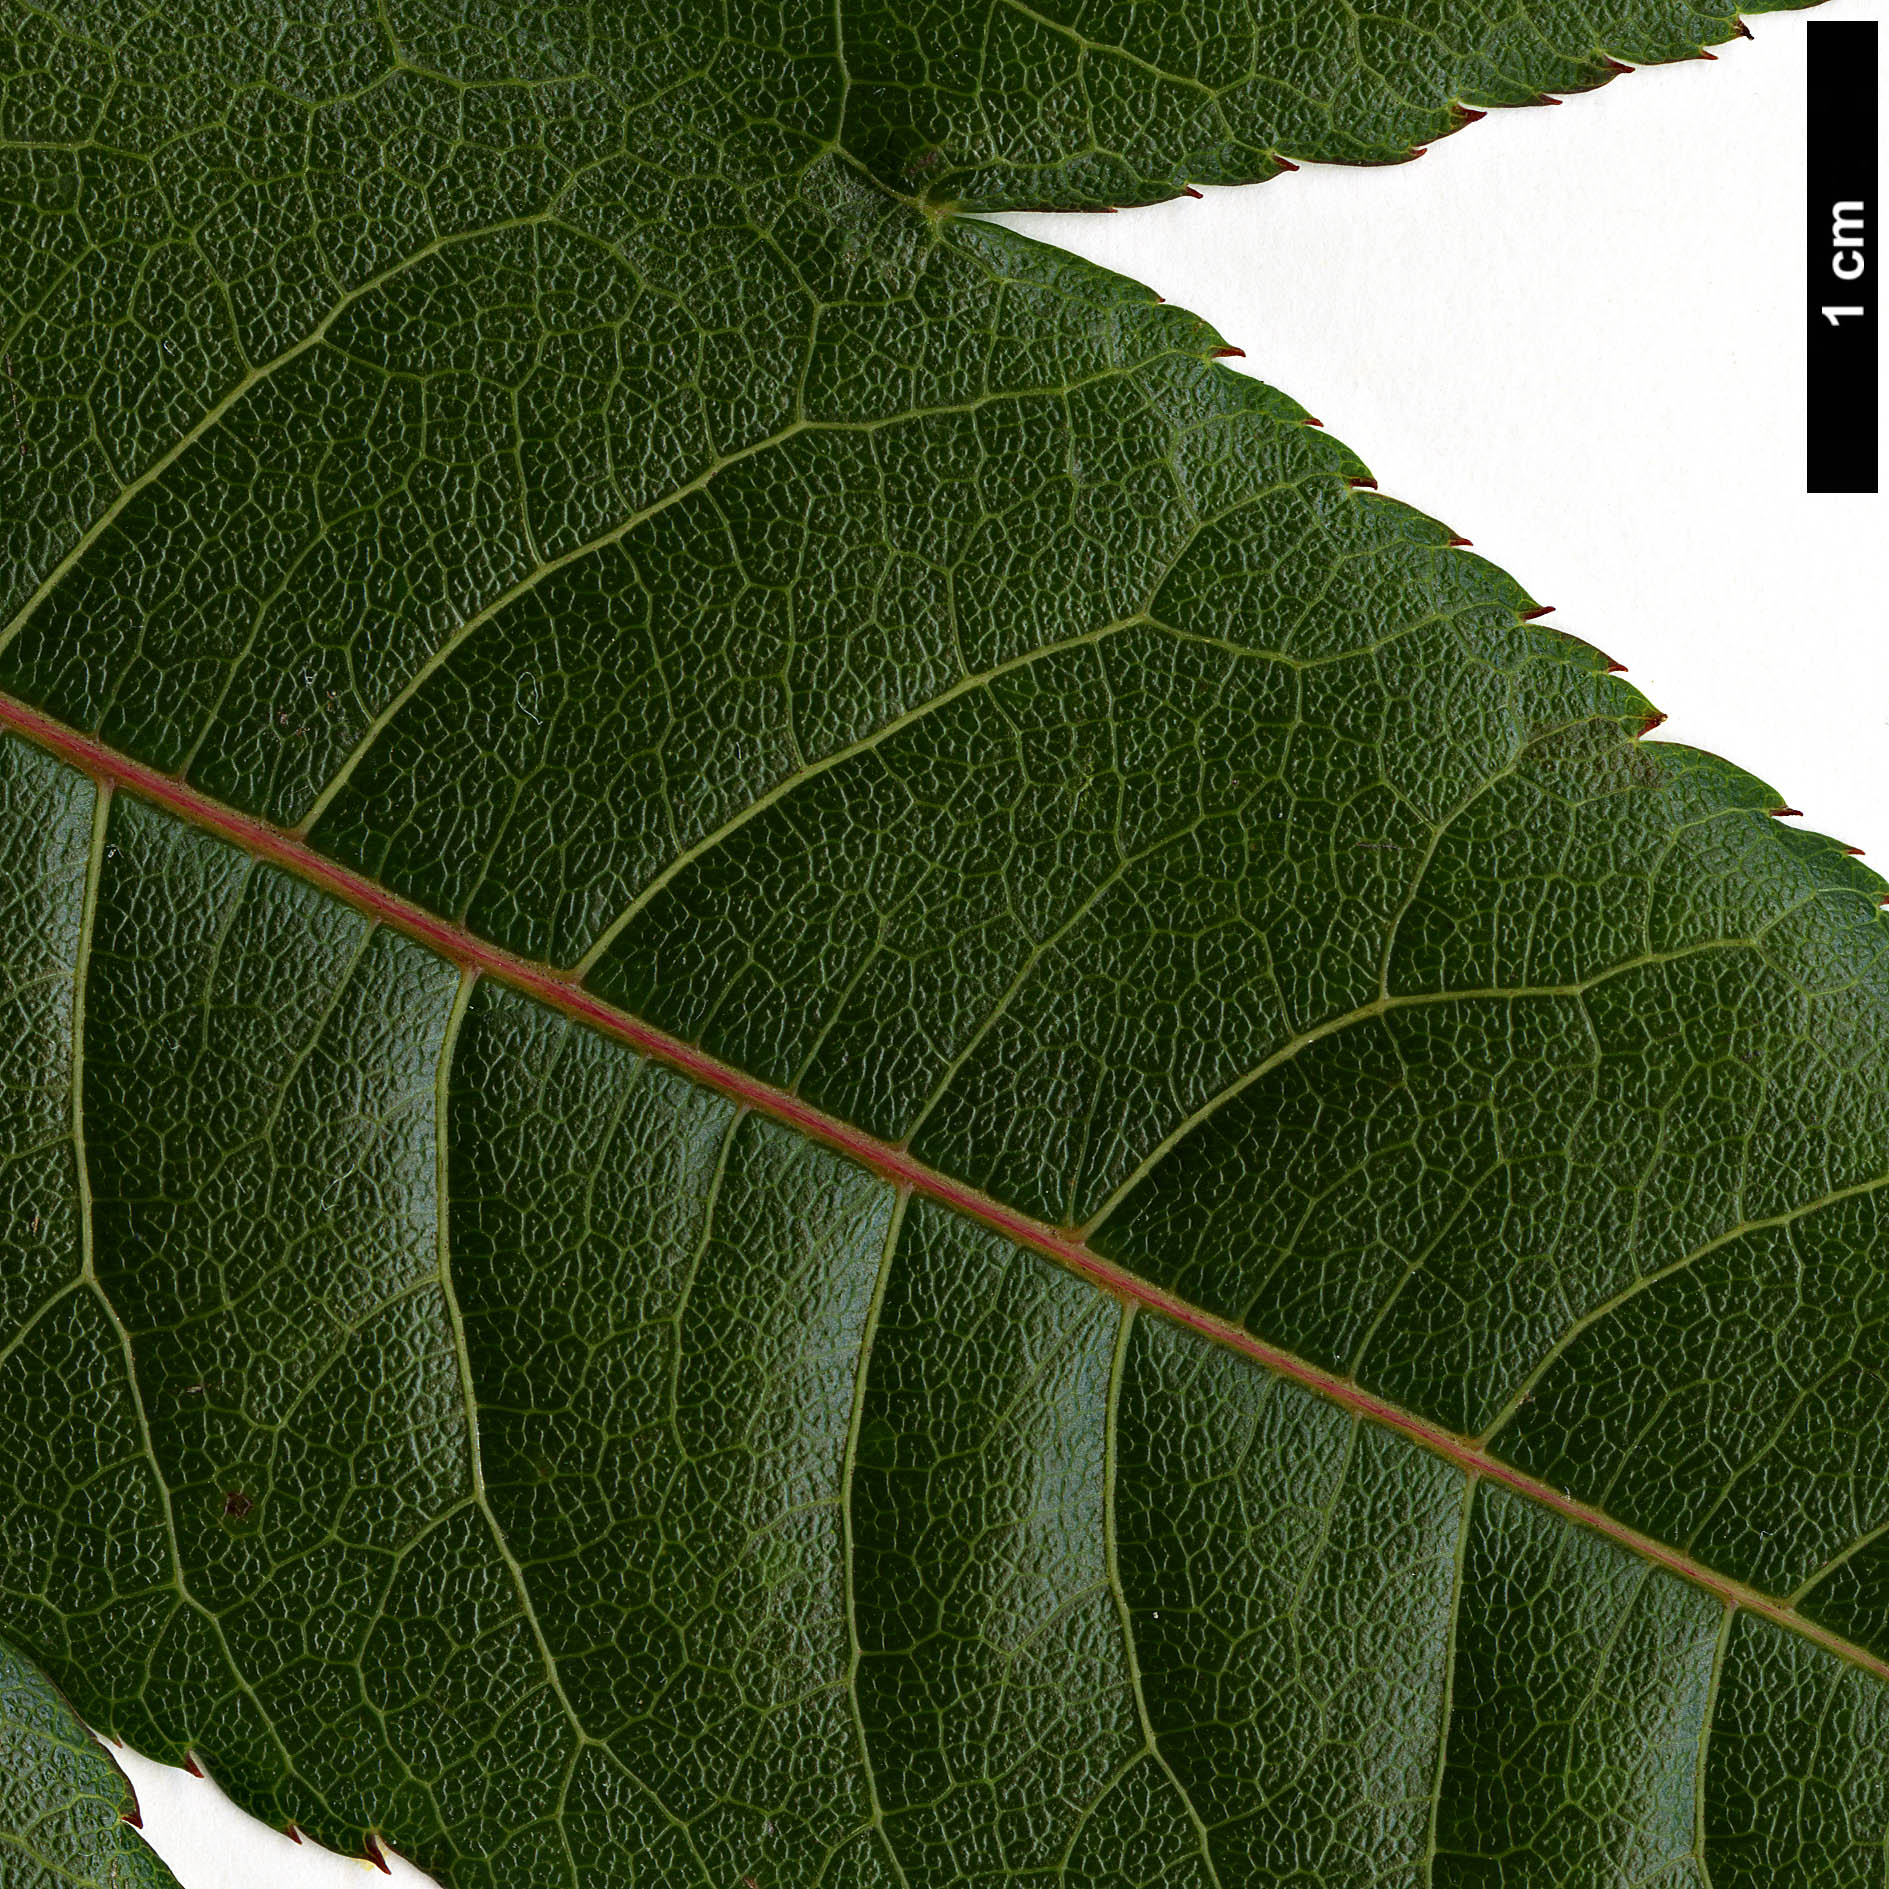 High resolution image: Family: Sapindaceae - Genus: Acer - Taxon: campbellii - SpeciesSub: subsp. campbellii